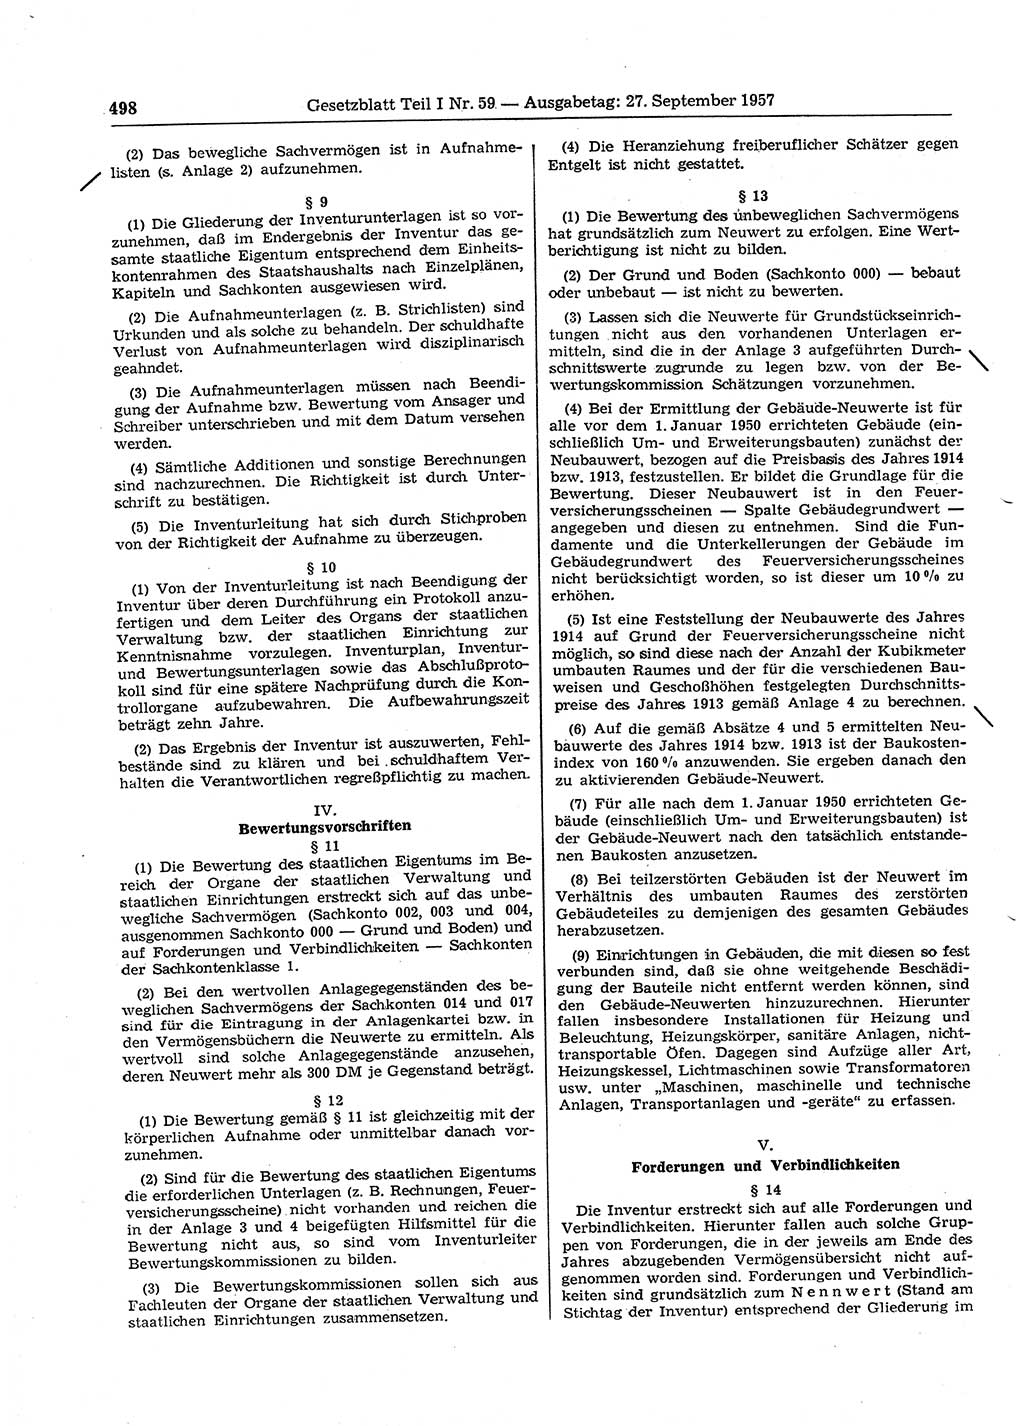 Gesetzblatt (GBl.) der Deutschen Demokratischen Republik (DDR) Teil Ⅰ 1957, Seite 498 (GBl. DDR Ⅰ 1957, S. 498)